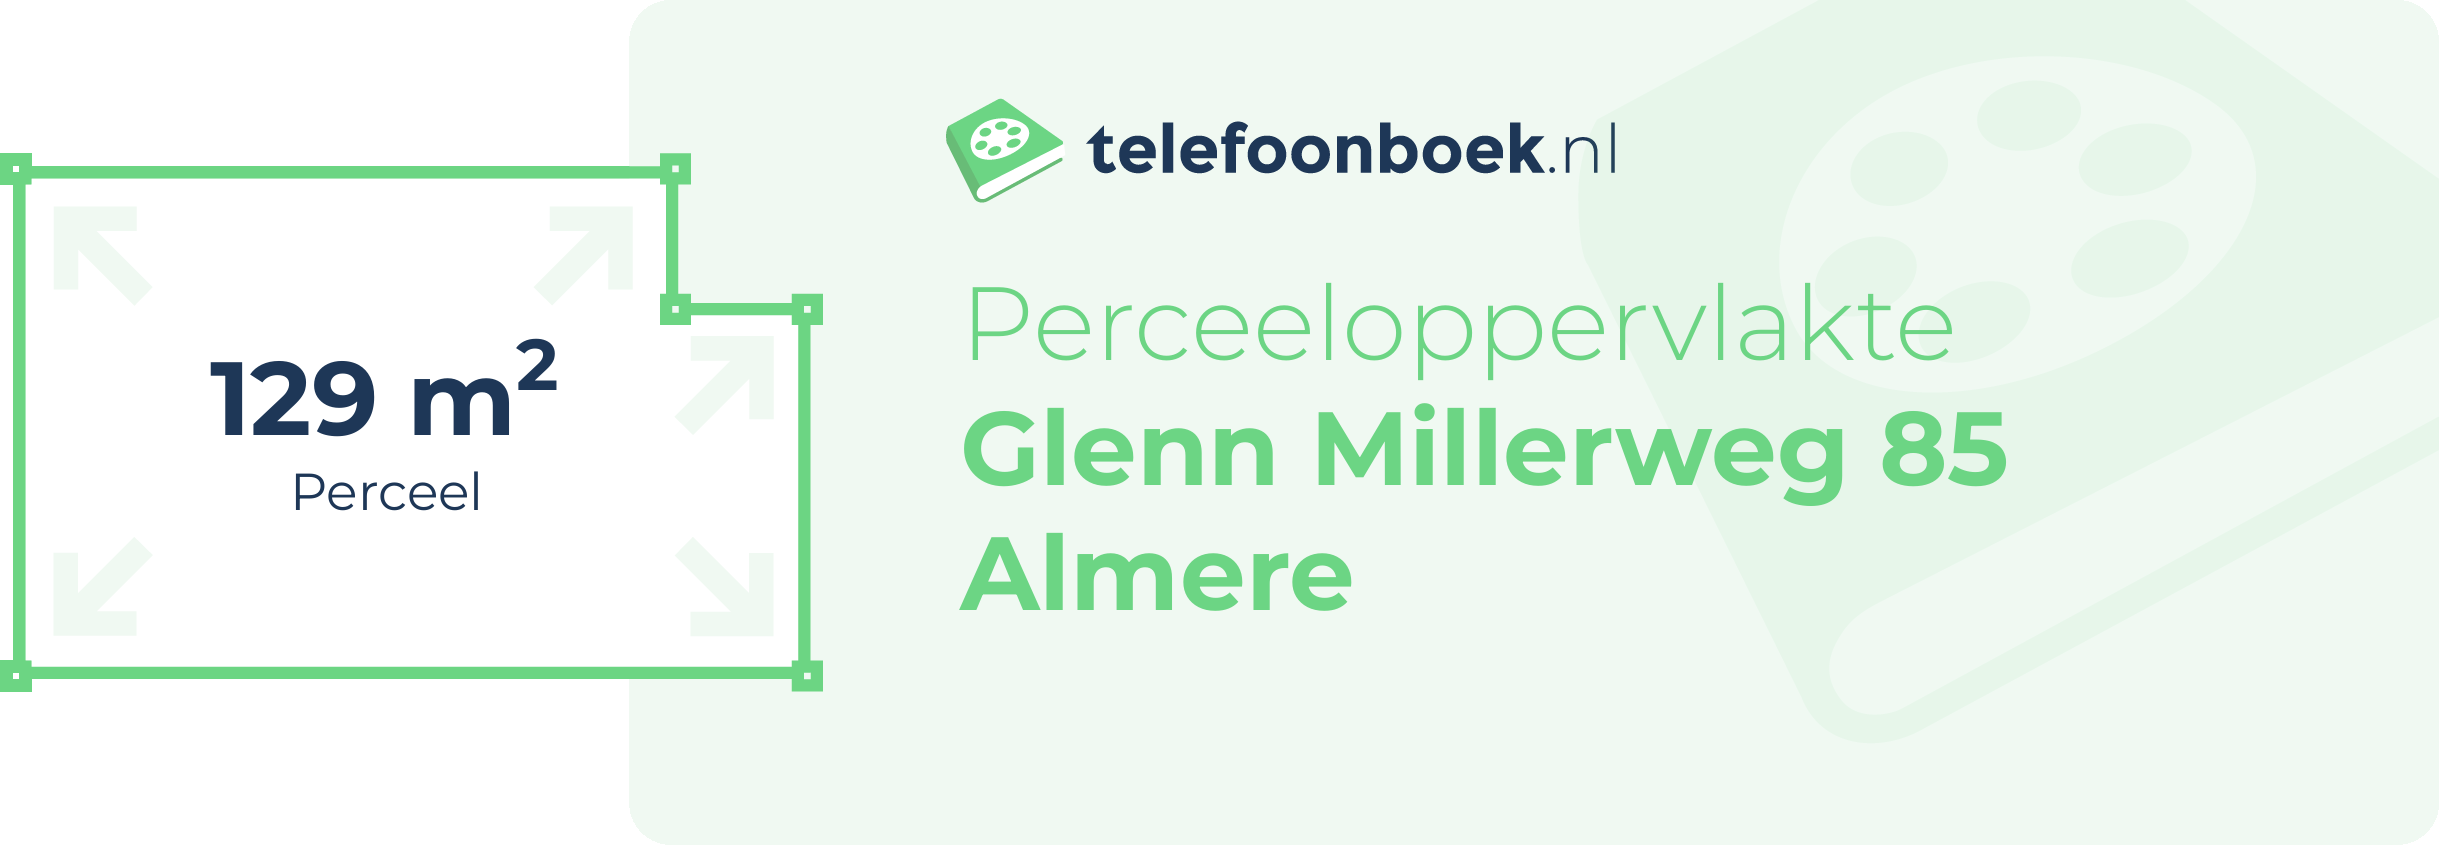 Perceeloppervlakte Glenn Millerweg 85 Almere